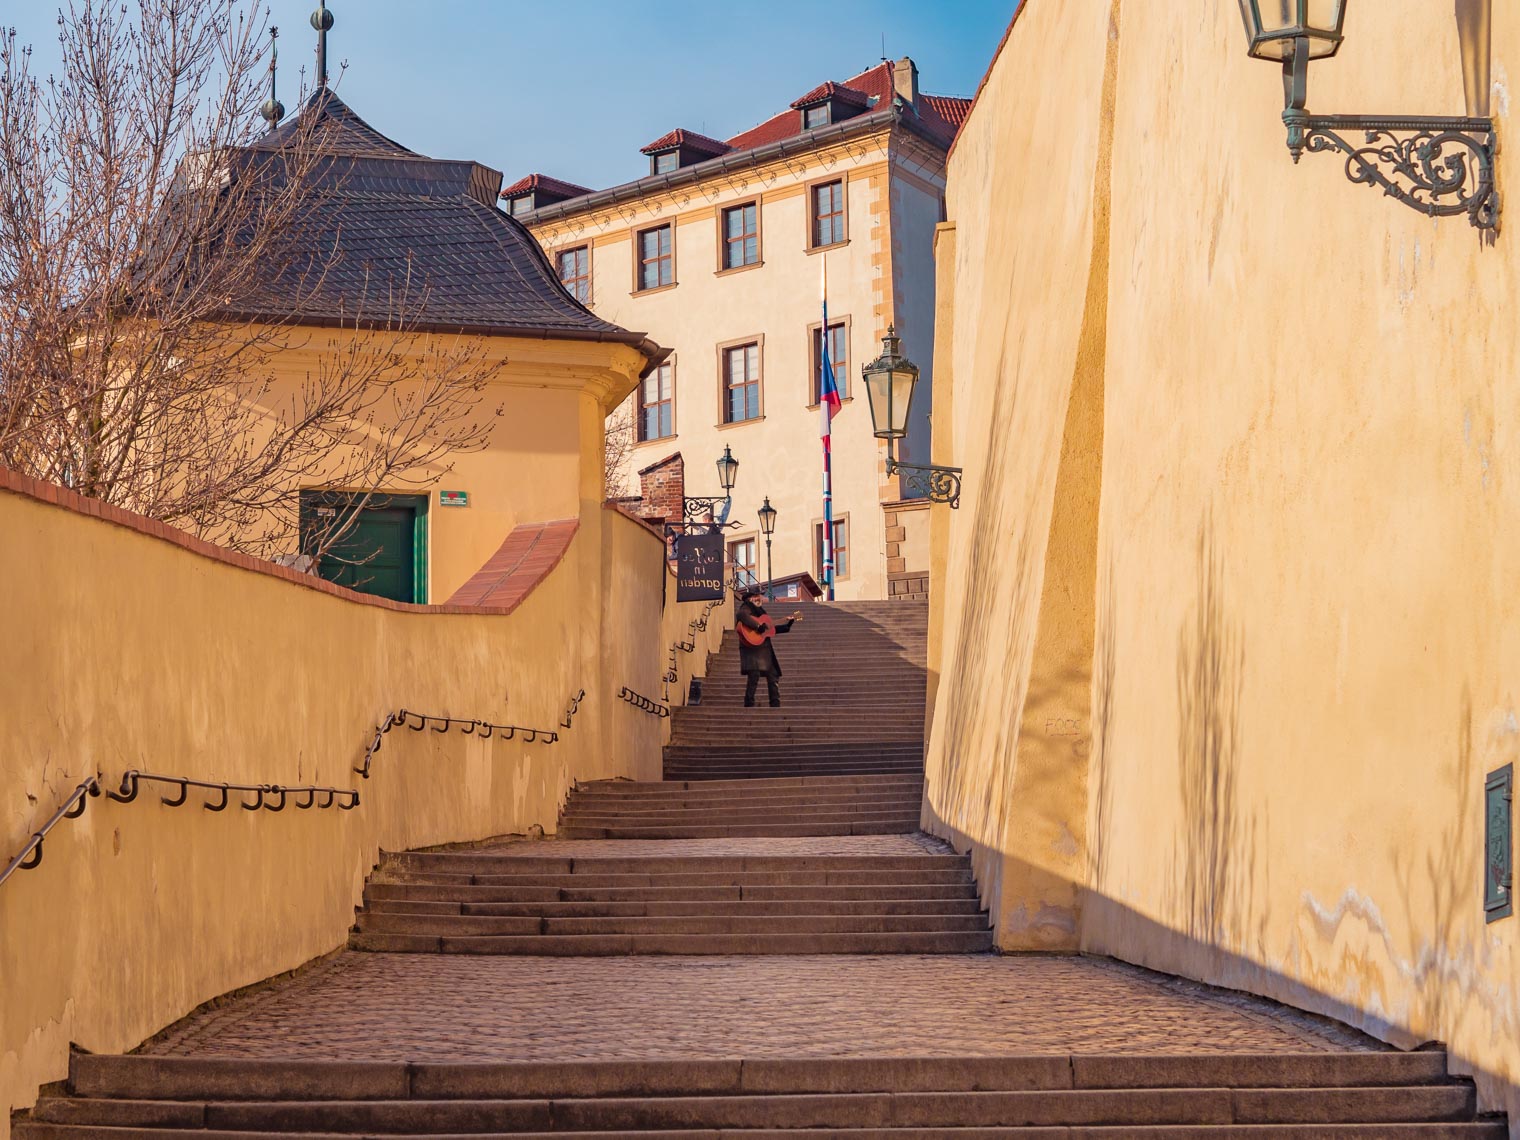 Zamecke schody Prague sightseeing walk to Prague castle